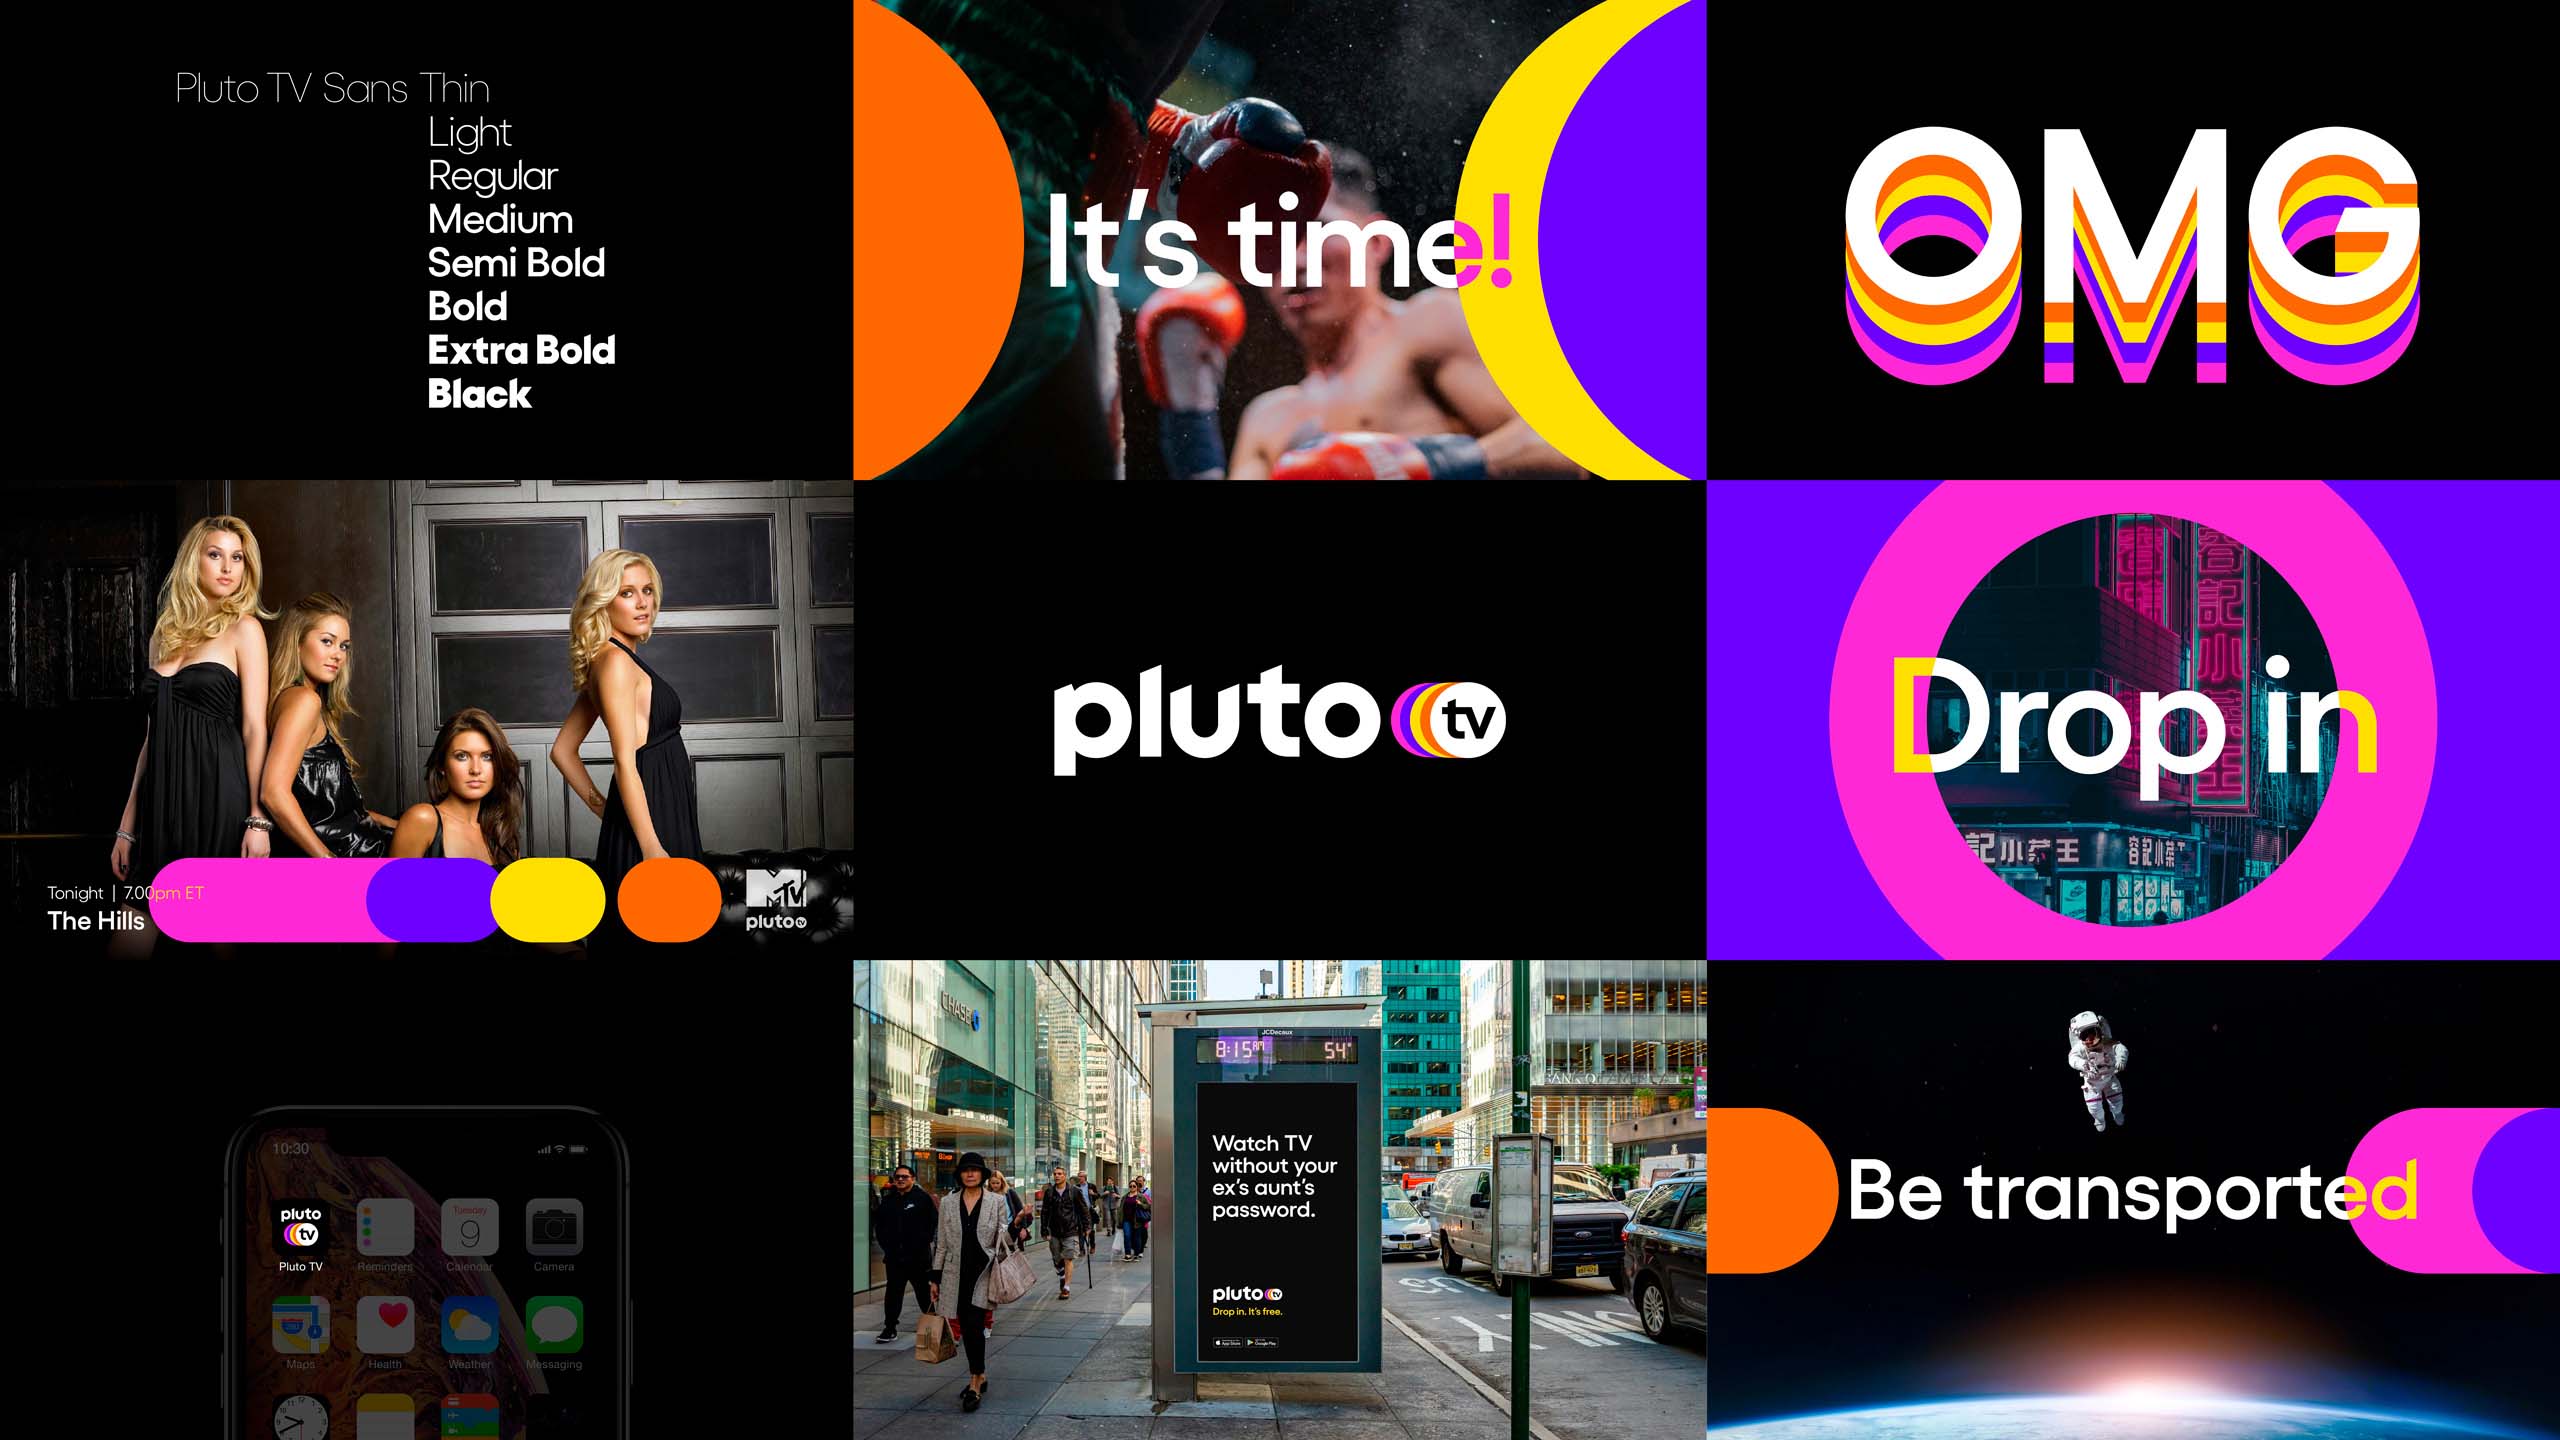 Pluto TV's new campaign.